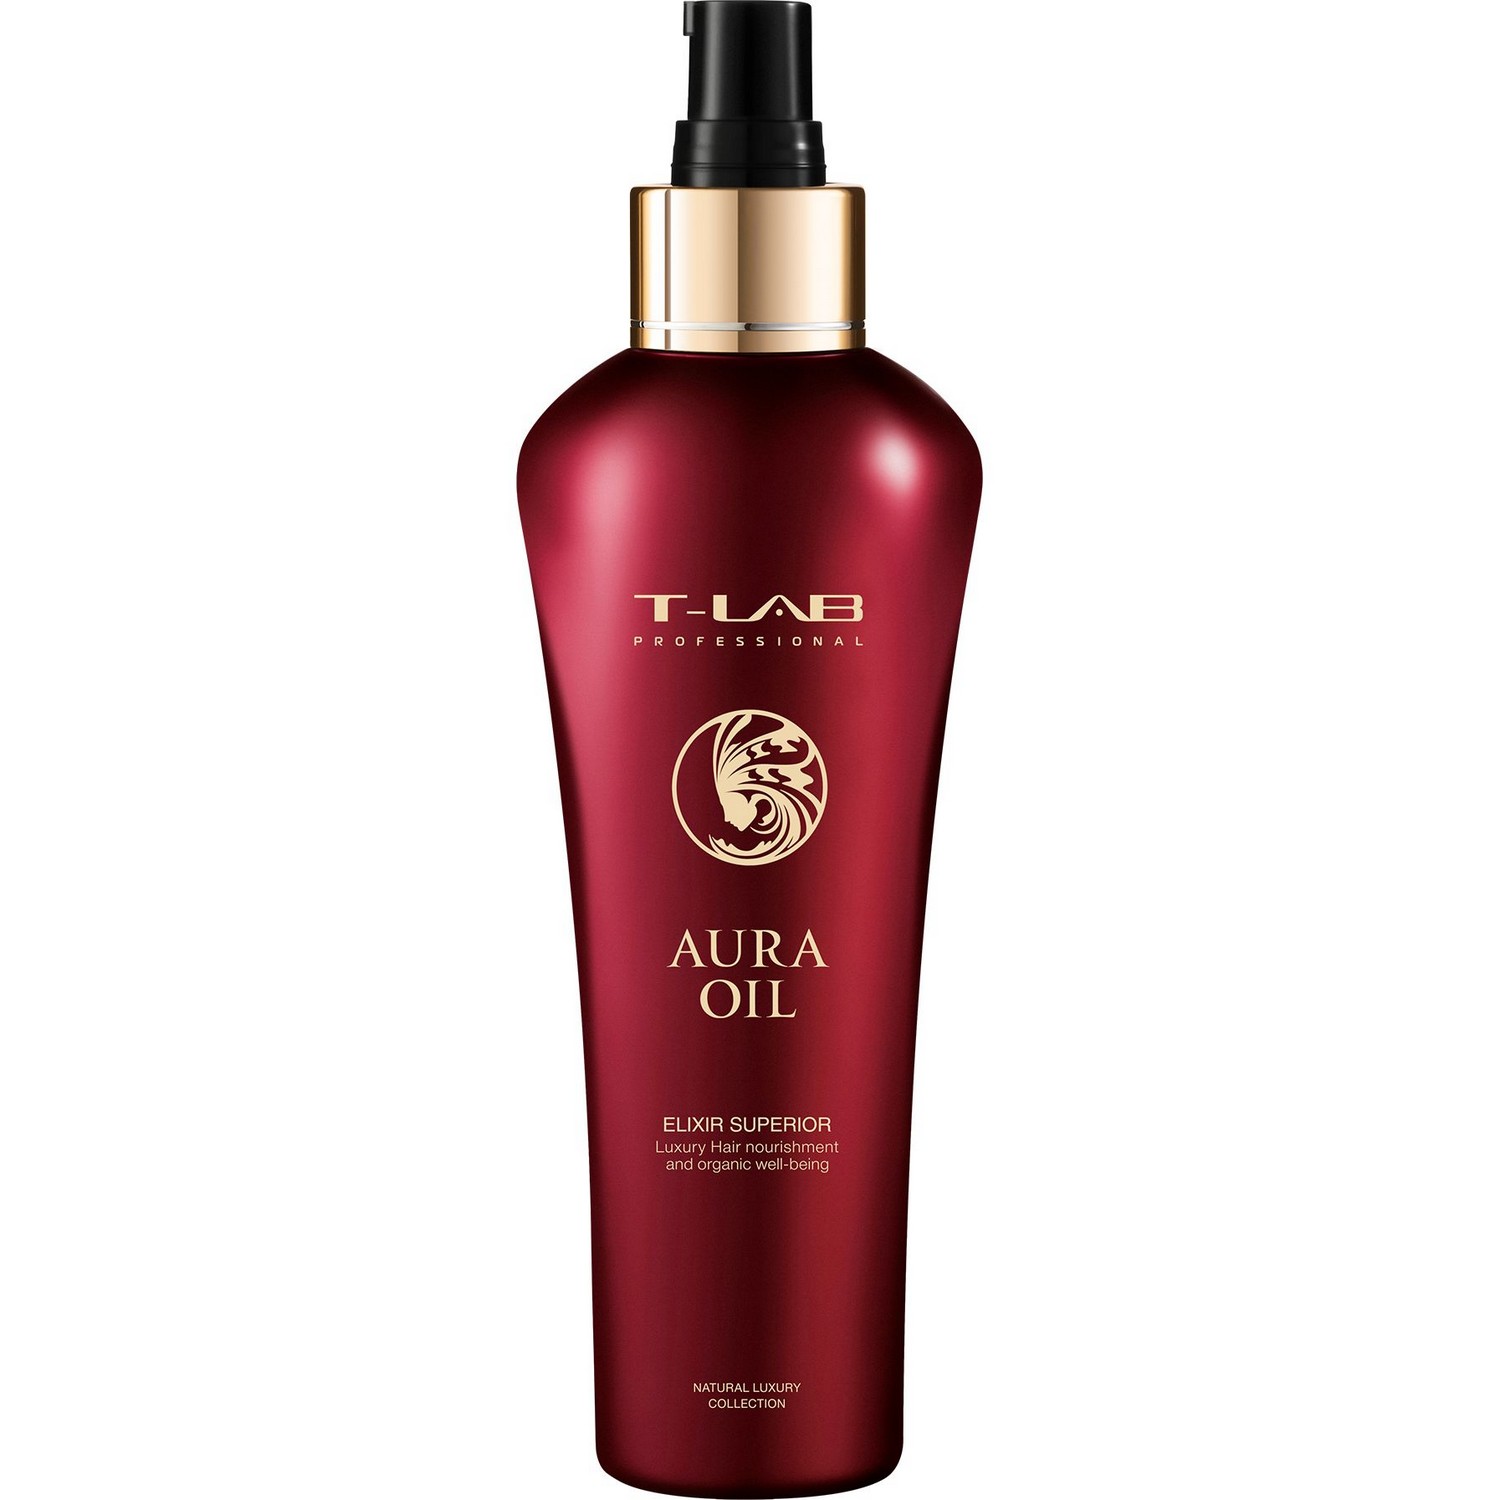 Эликсир T-LAB Professional Aura Oil Elexir Superior для роскошной мягкости и натуральной красоты волос, 150 мл - фото 1